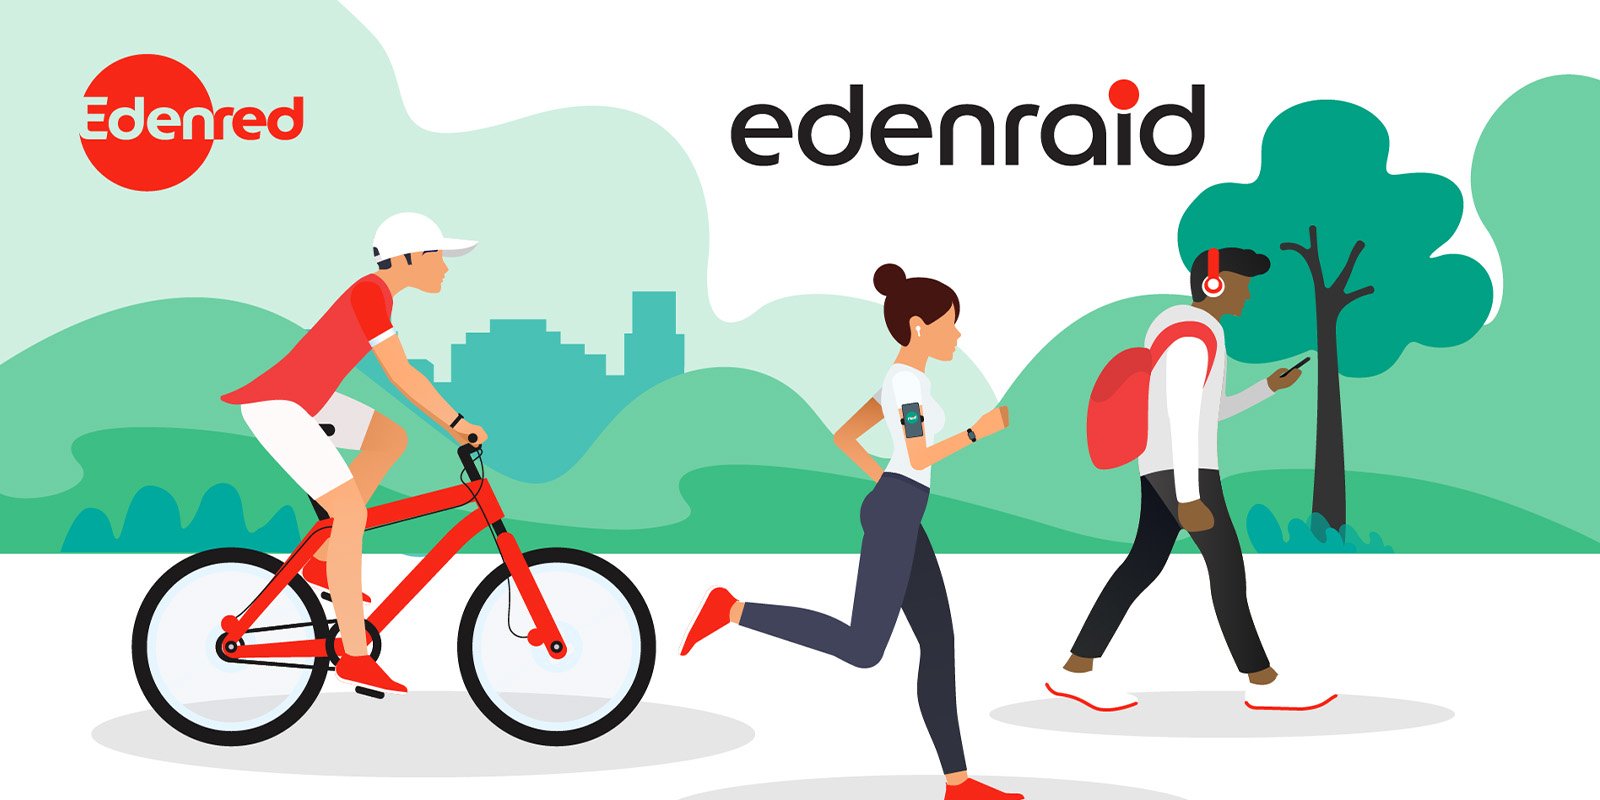 Edenraid kuvake, jossa yksi henkilö pyöräilee, toinen juoksee ja kolmas kävelee